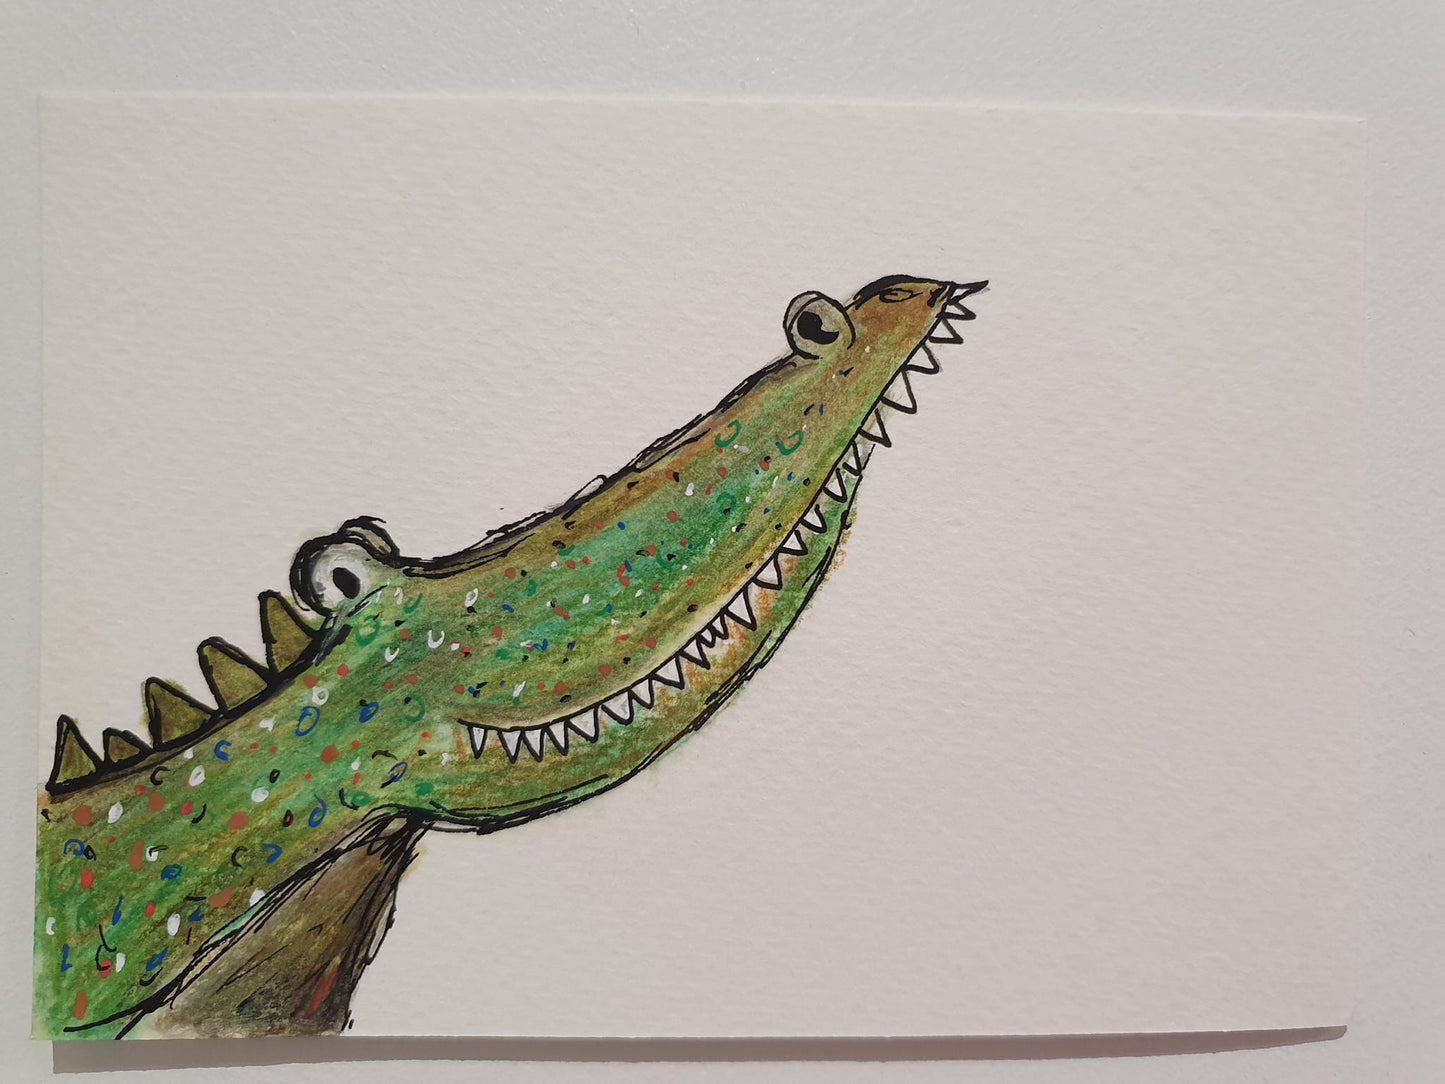 Claud Crocodile illustration